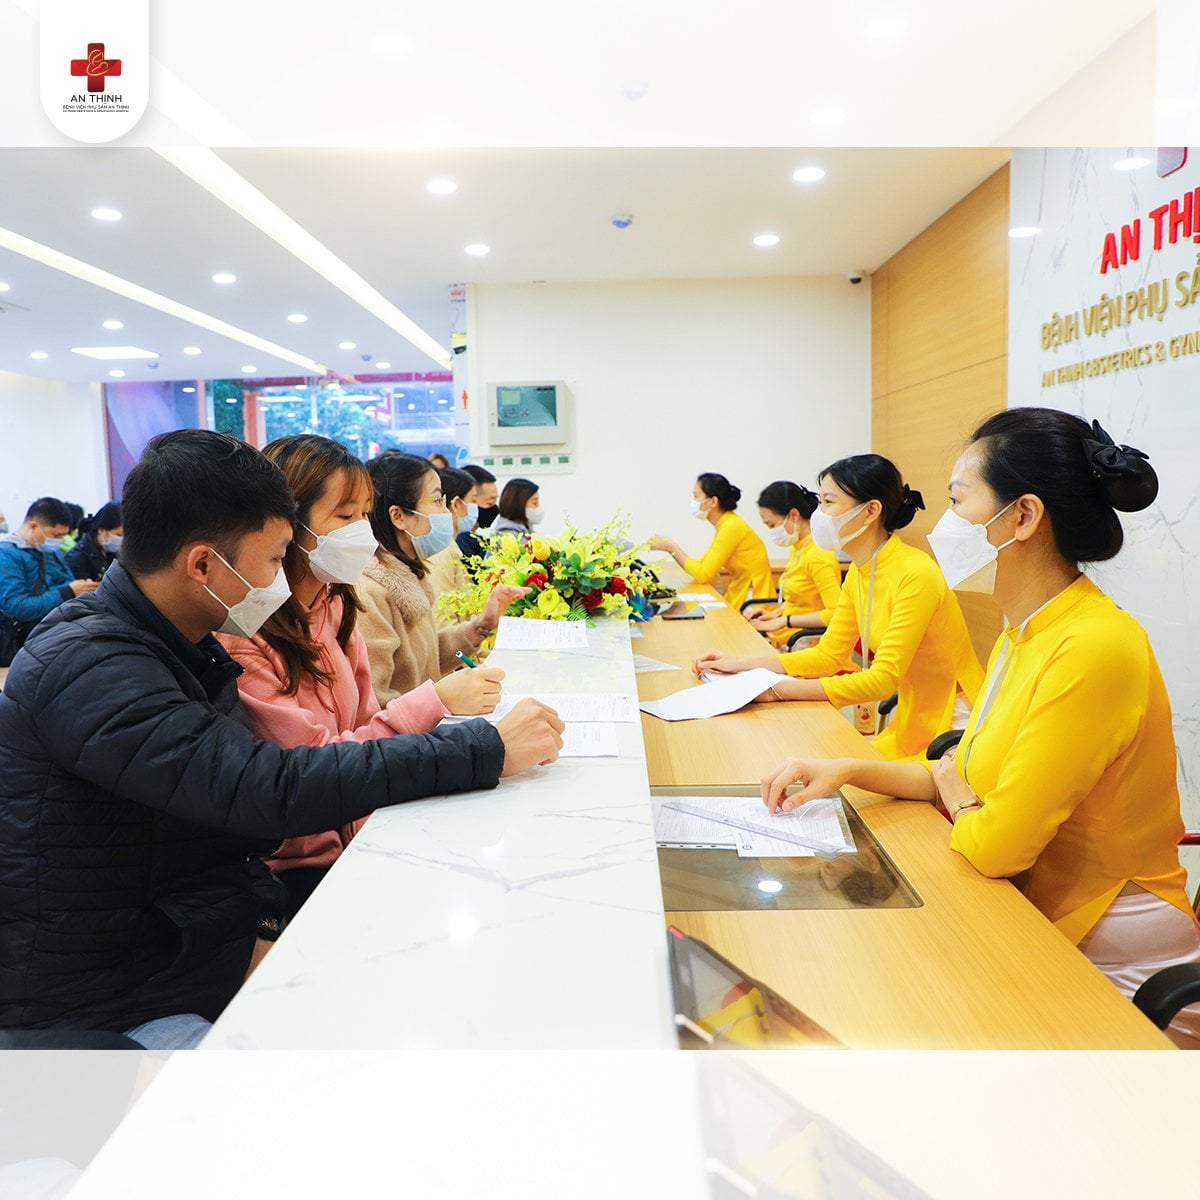 Bệnh viện Phụ sản An Thịnh luôn coi dịch vụ chăm sóc khách hàng là ưu tiên hàng đầu